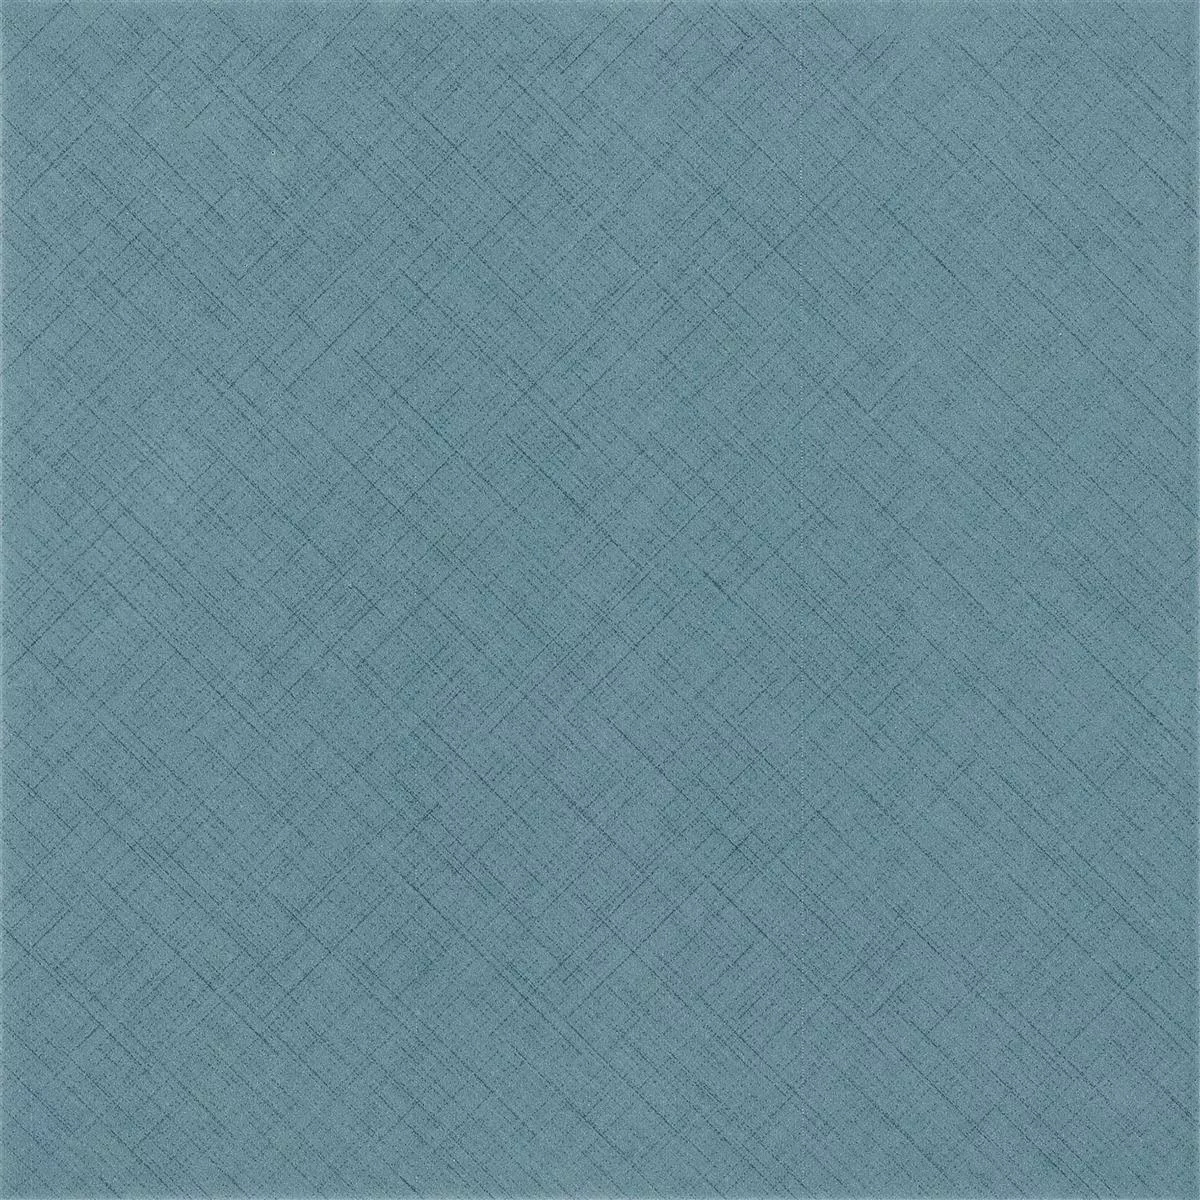 Podlahové Dlaždice Flowerfield 18,5x18,5cm Modrá Základní Dlaždice